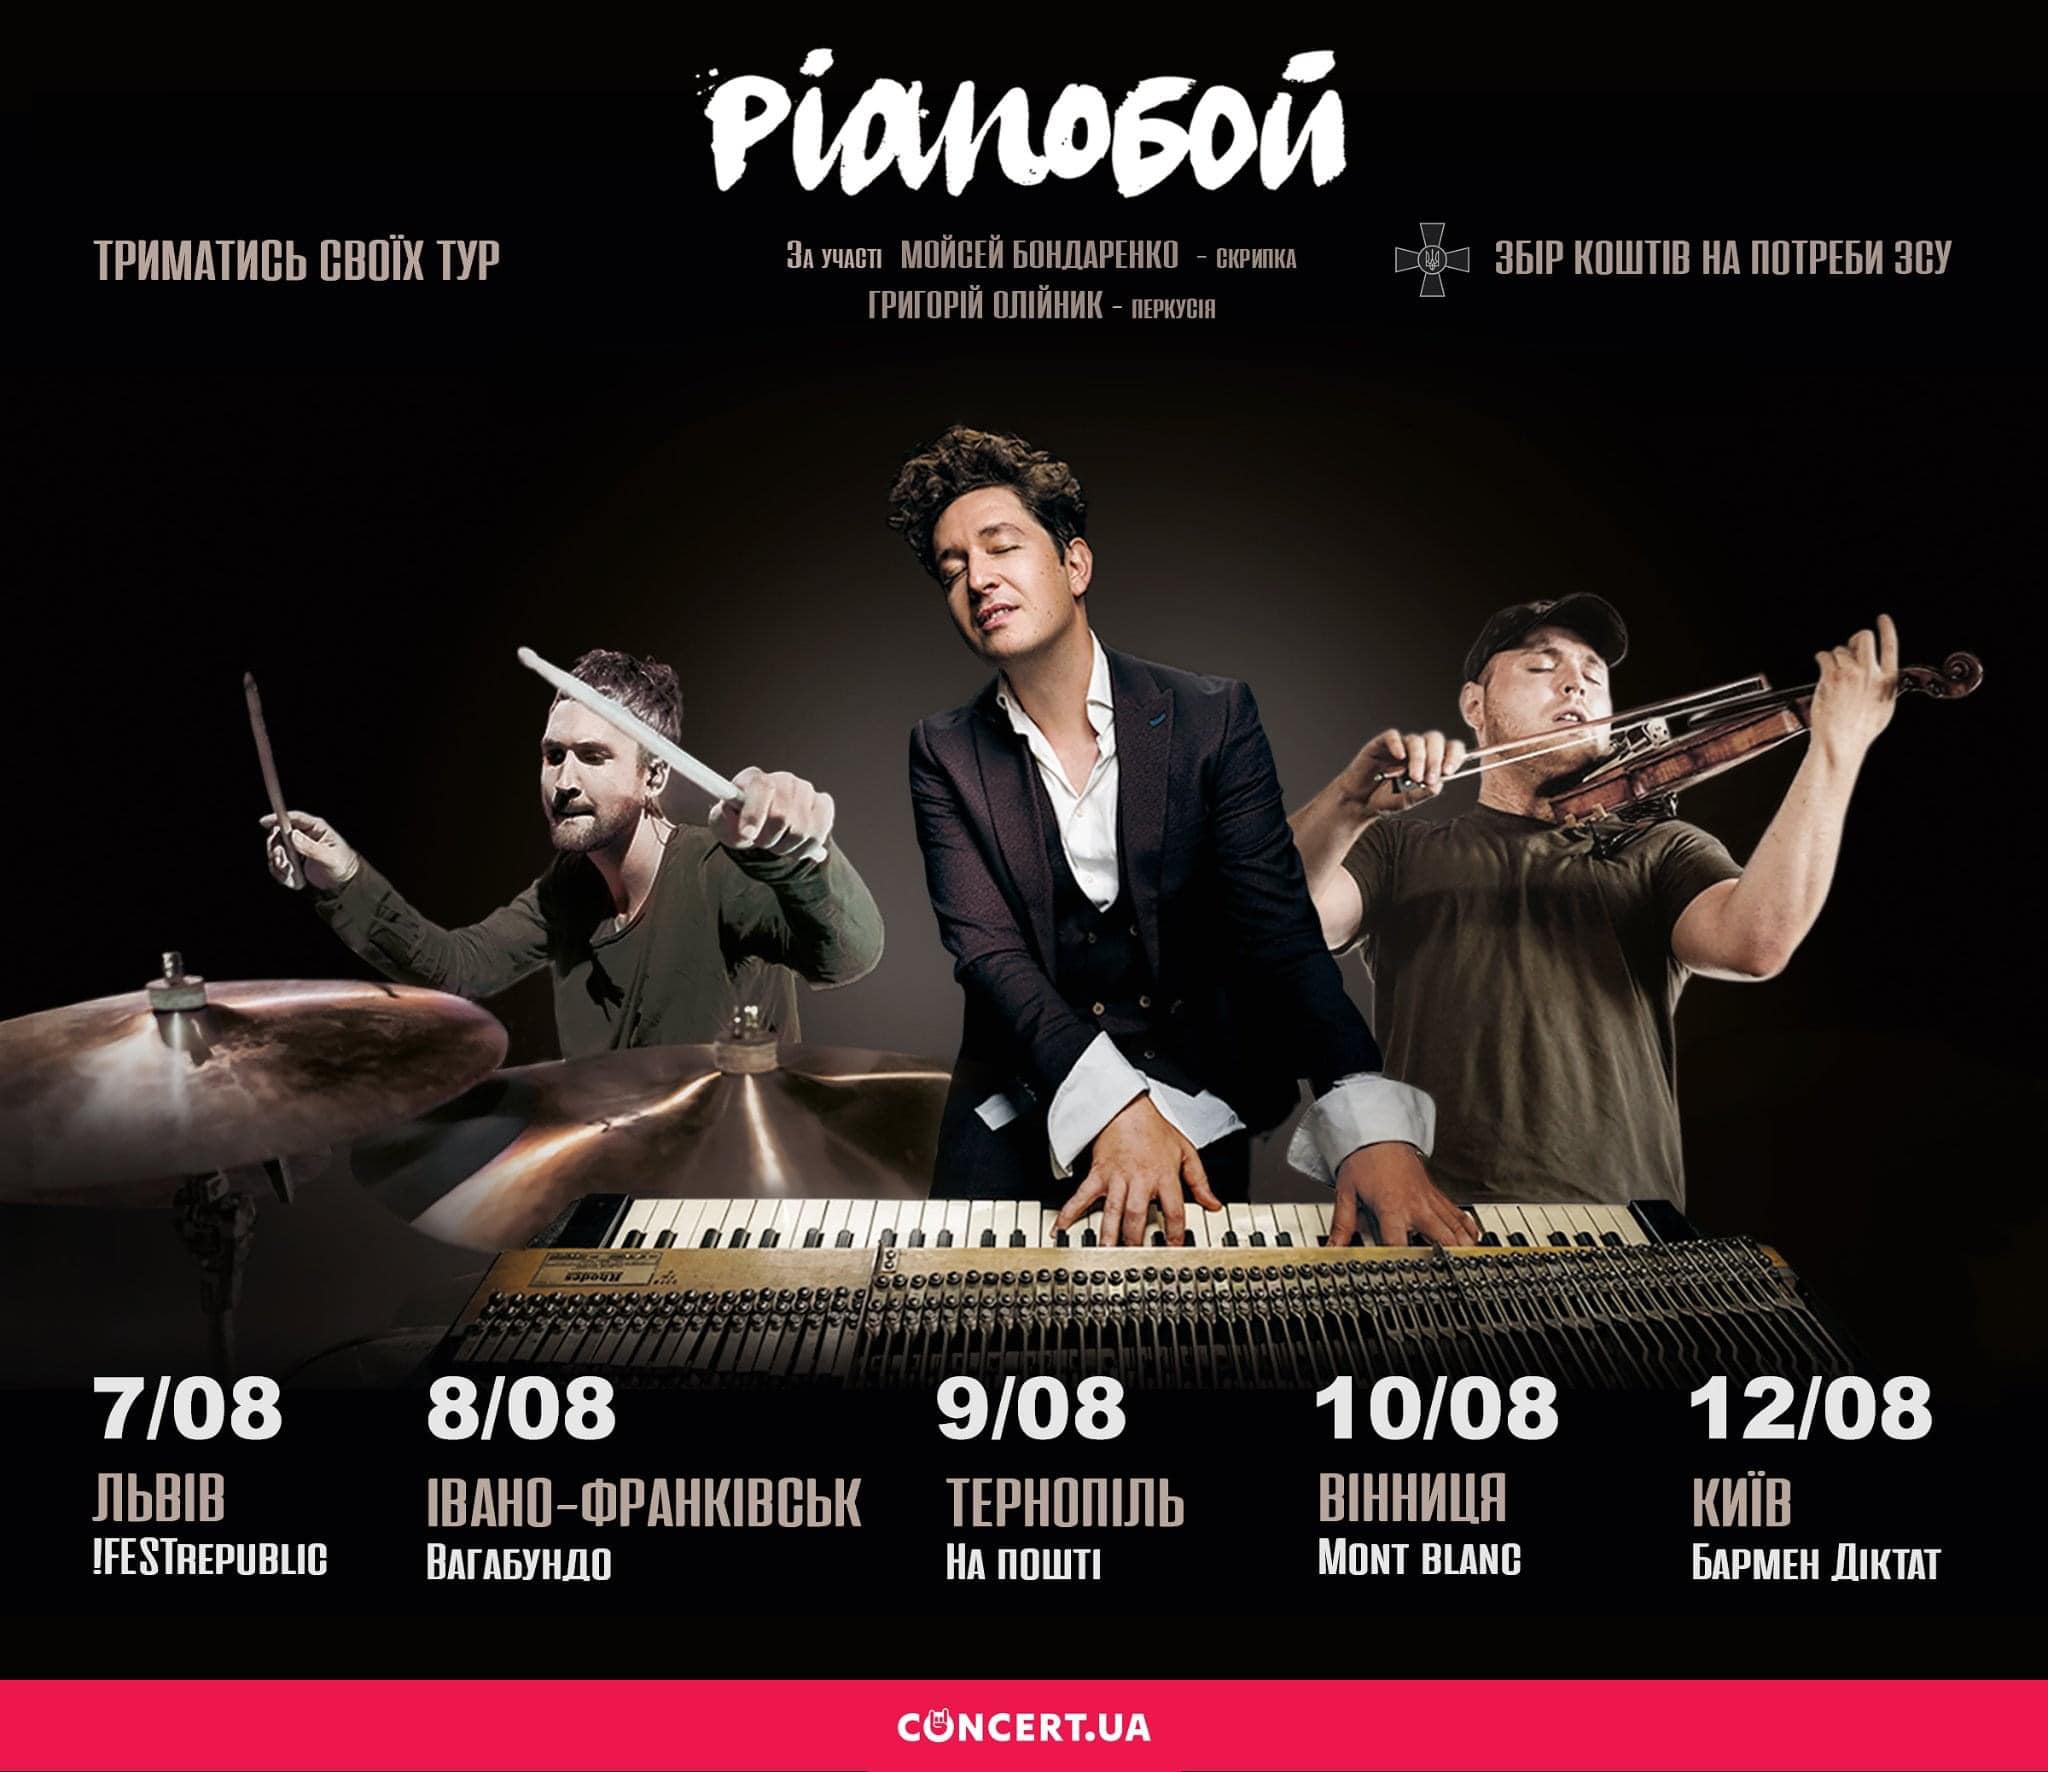 Концерты звезд в августе: Огневич и Pianoбой в Украине, 